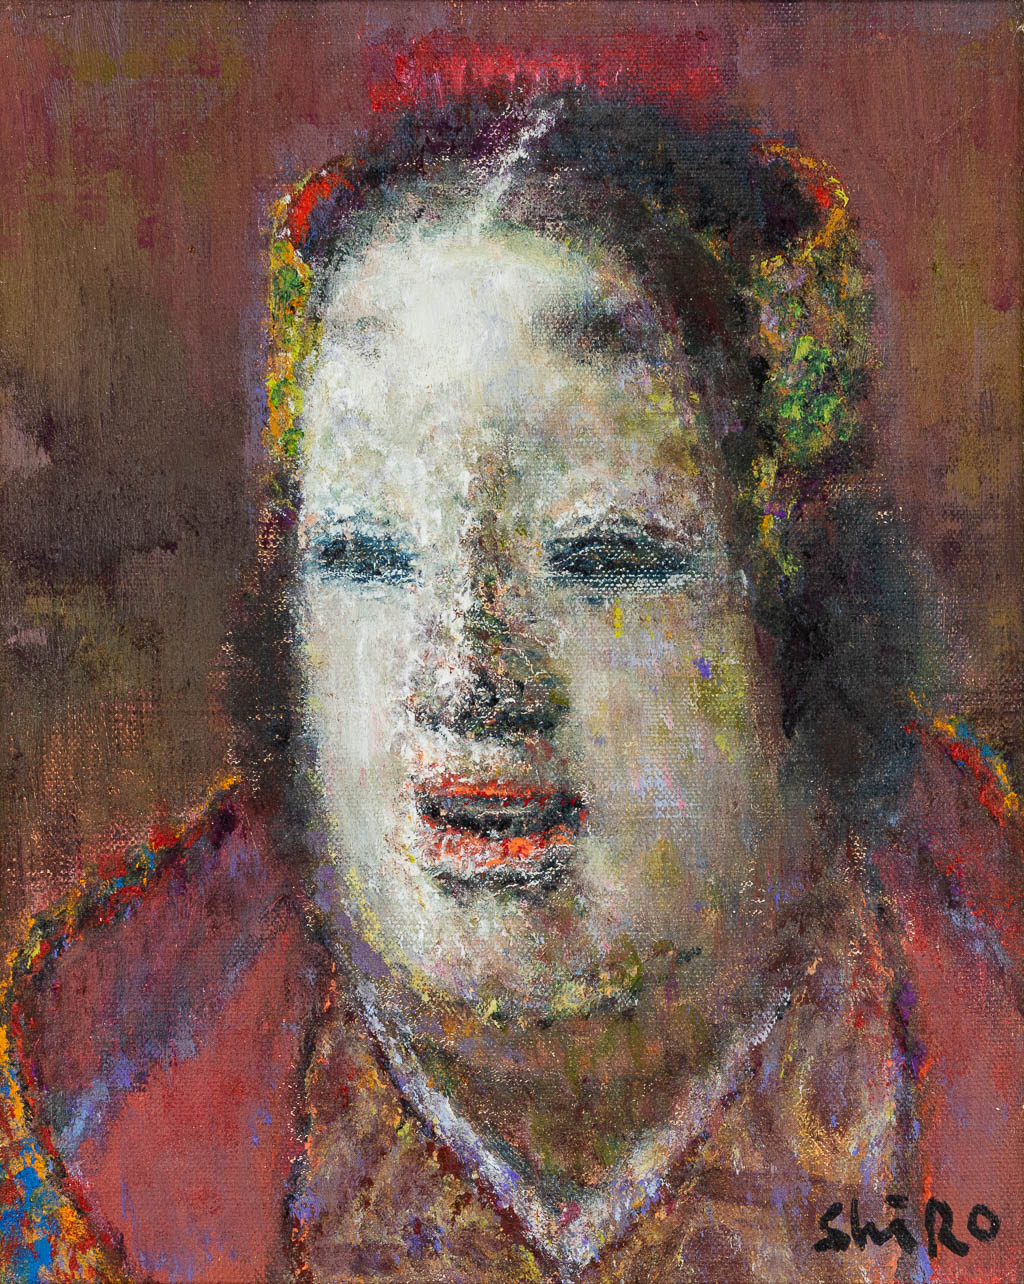 Shiro WAKE (1925-1988) Portret van een Magojiro masker, een mid-century schilderij, olie op doek. (21 x 26 cm)